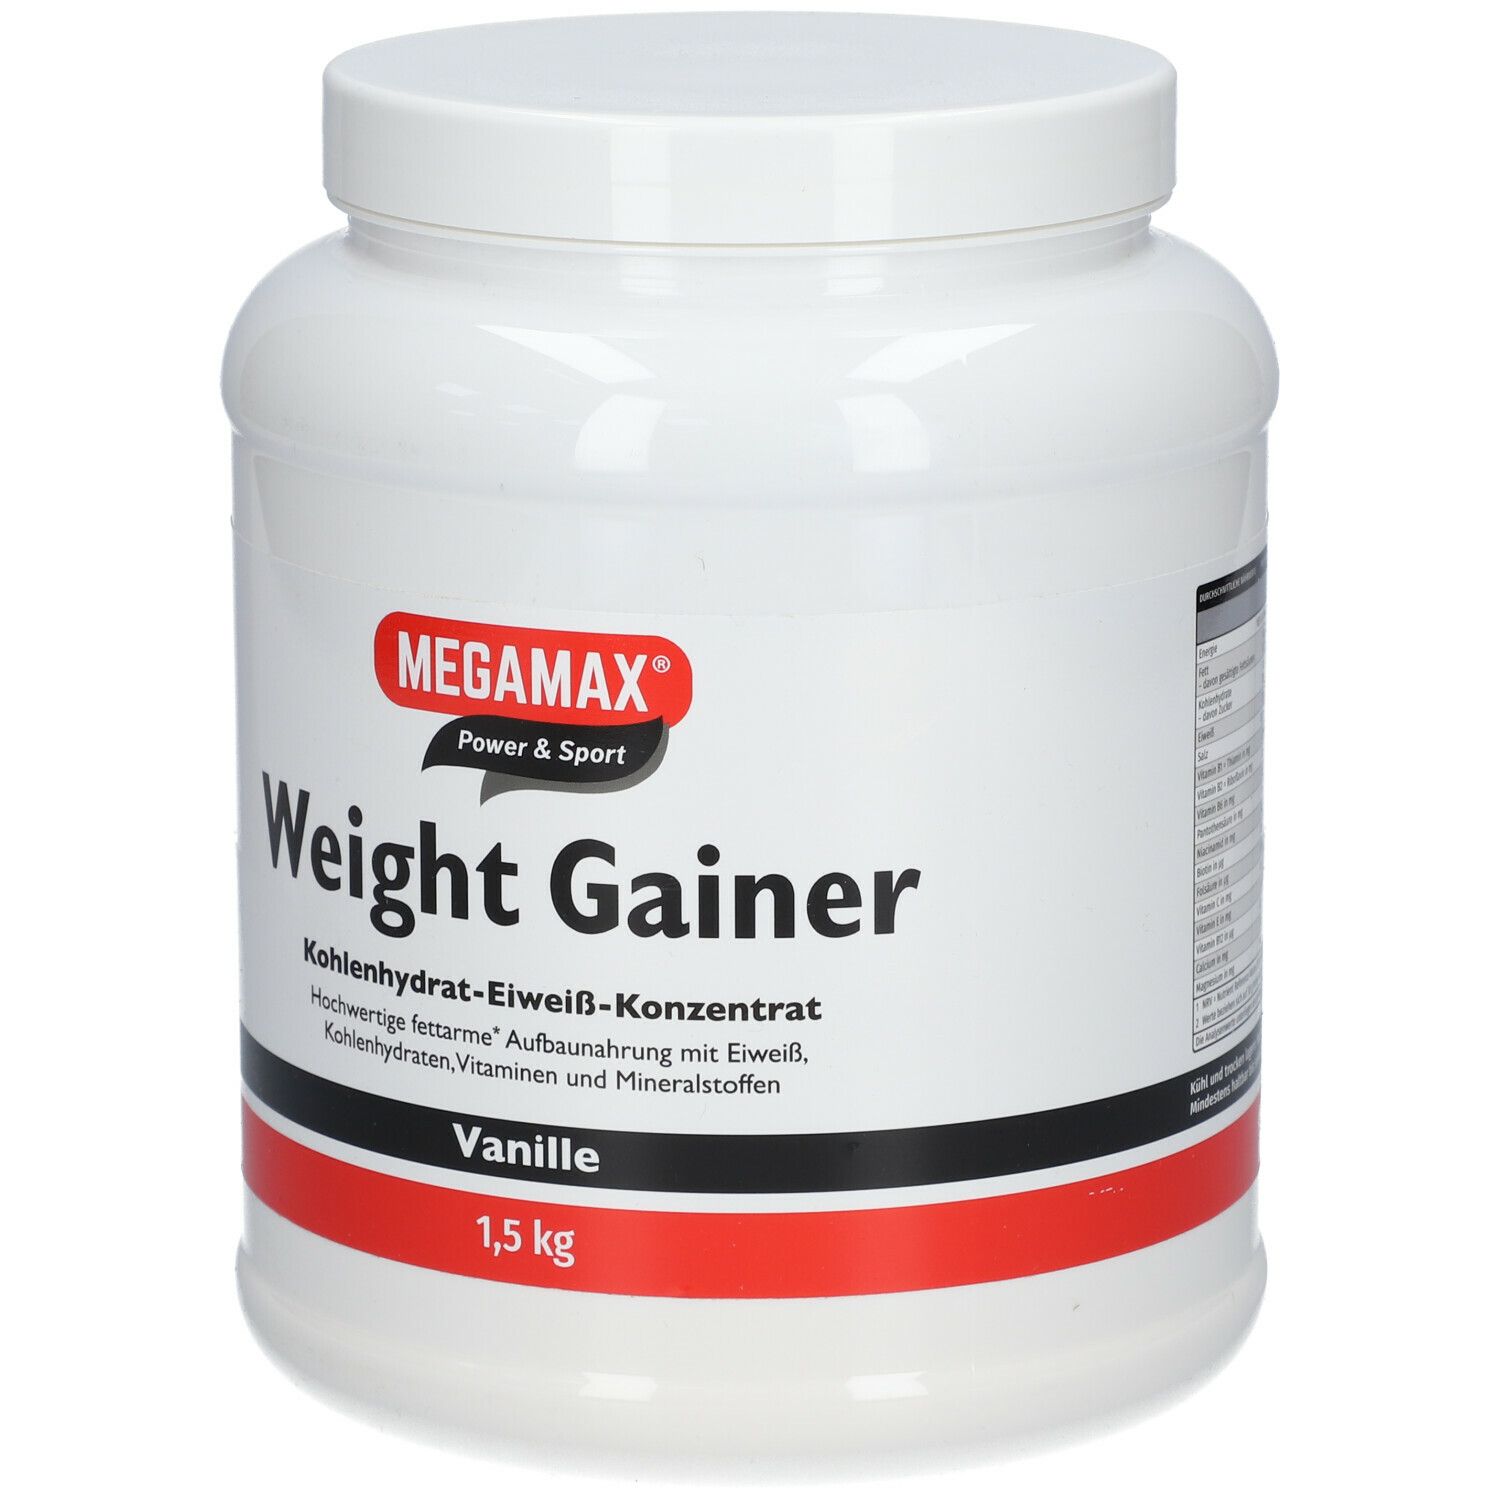 MEGAMAX® Power & Sport Weight Gainer Kohlenhydrat-Eiweiß-Konzentrat Vanille-Geschmack